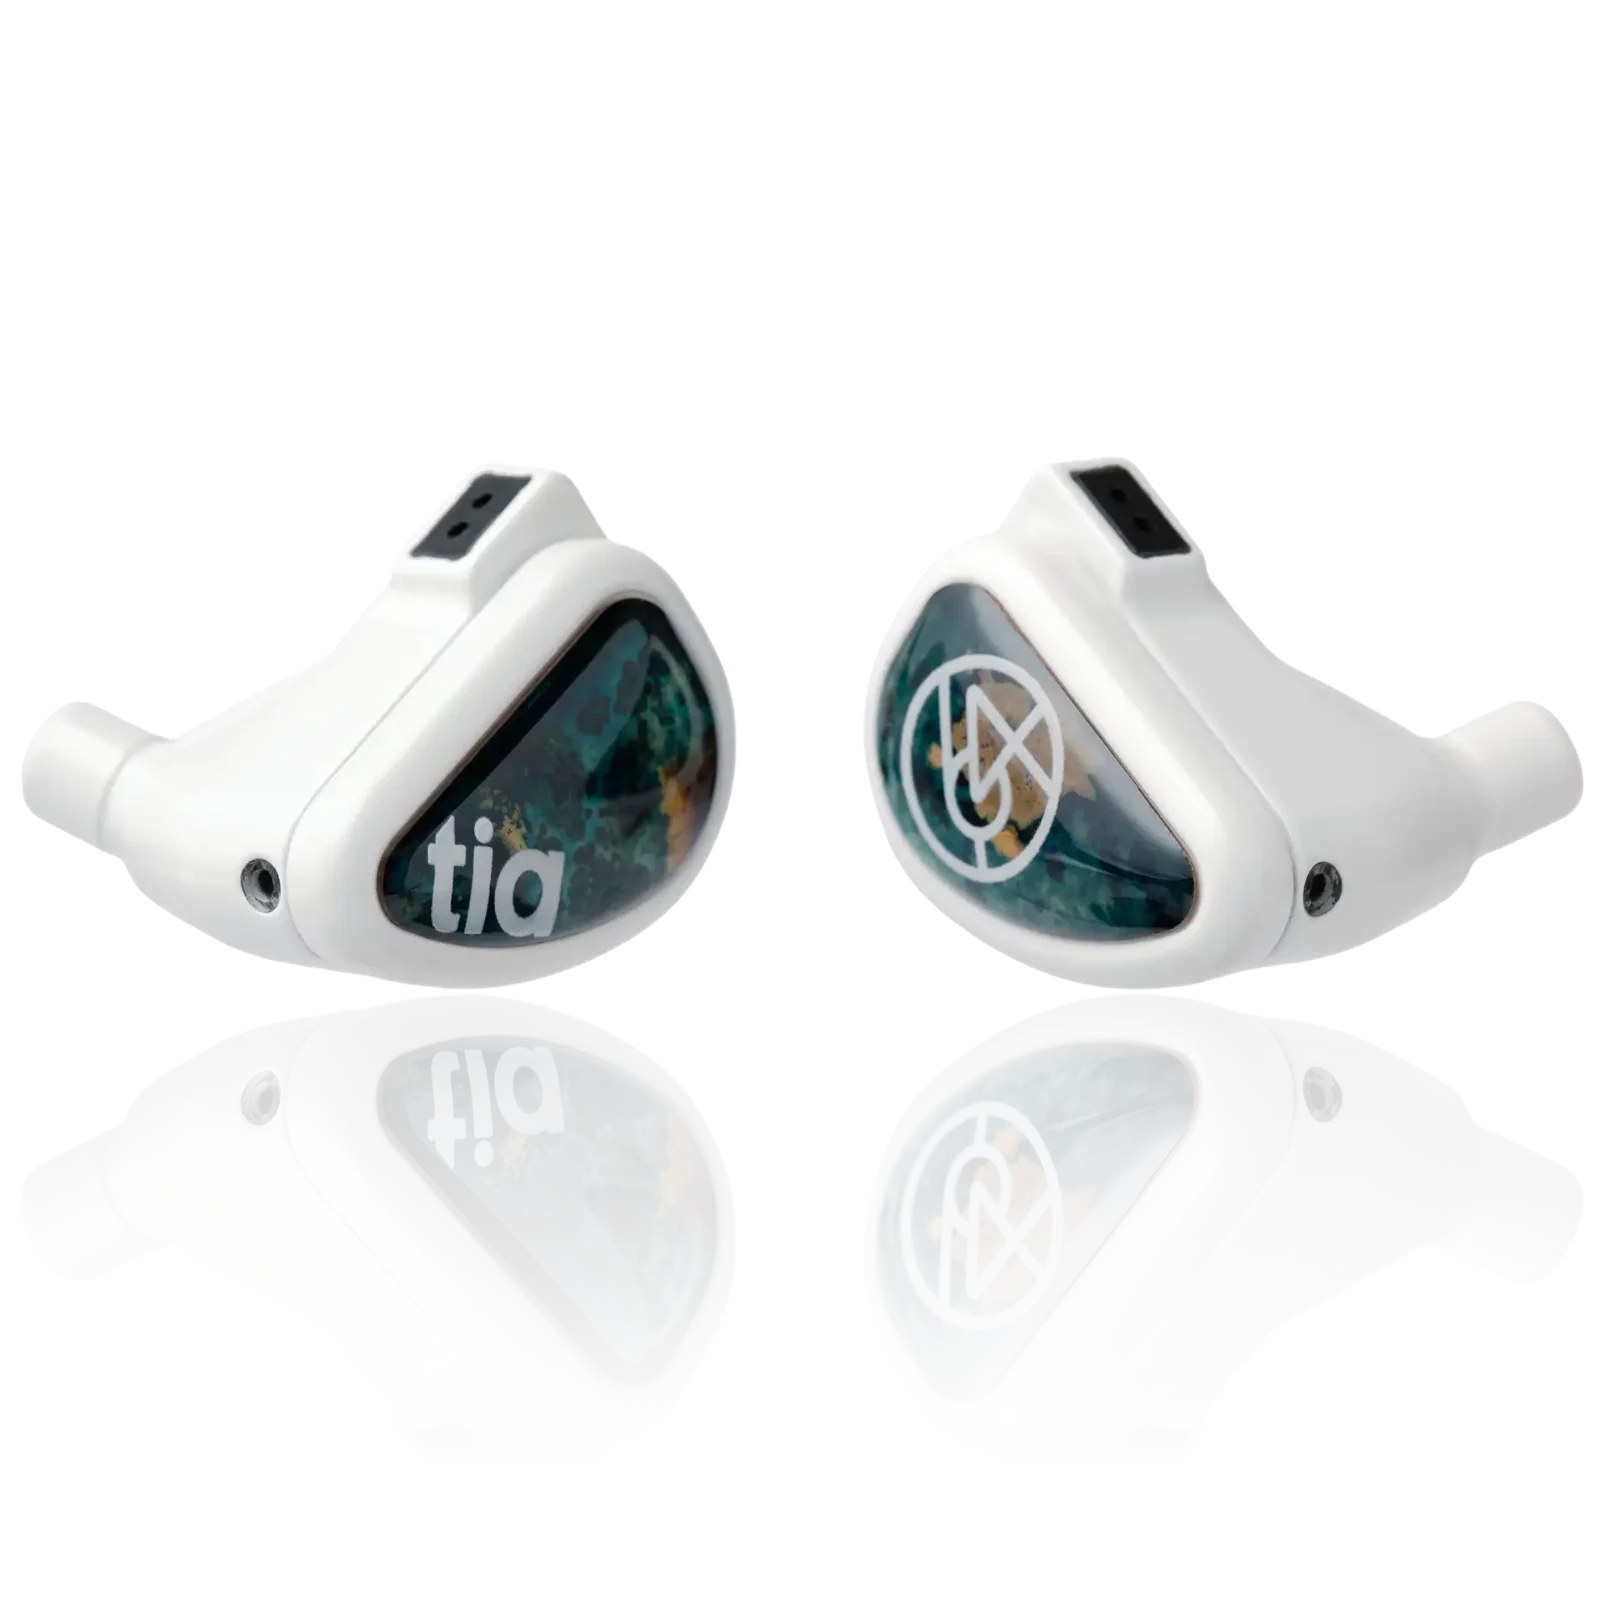 64 Audio Fourté Blanc - Limited Edition Four Hybrid Drivers Universal IEM Earphones